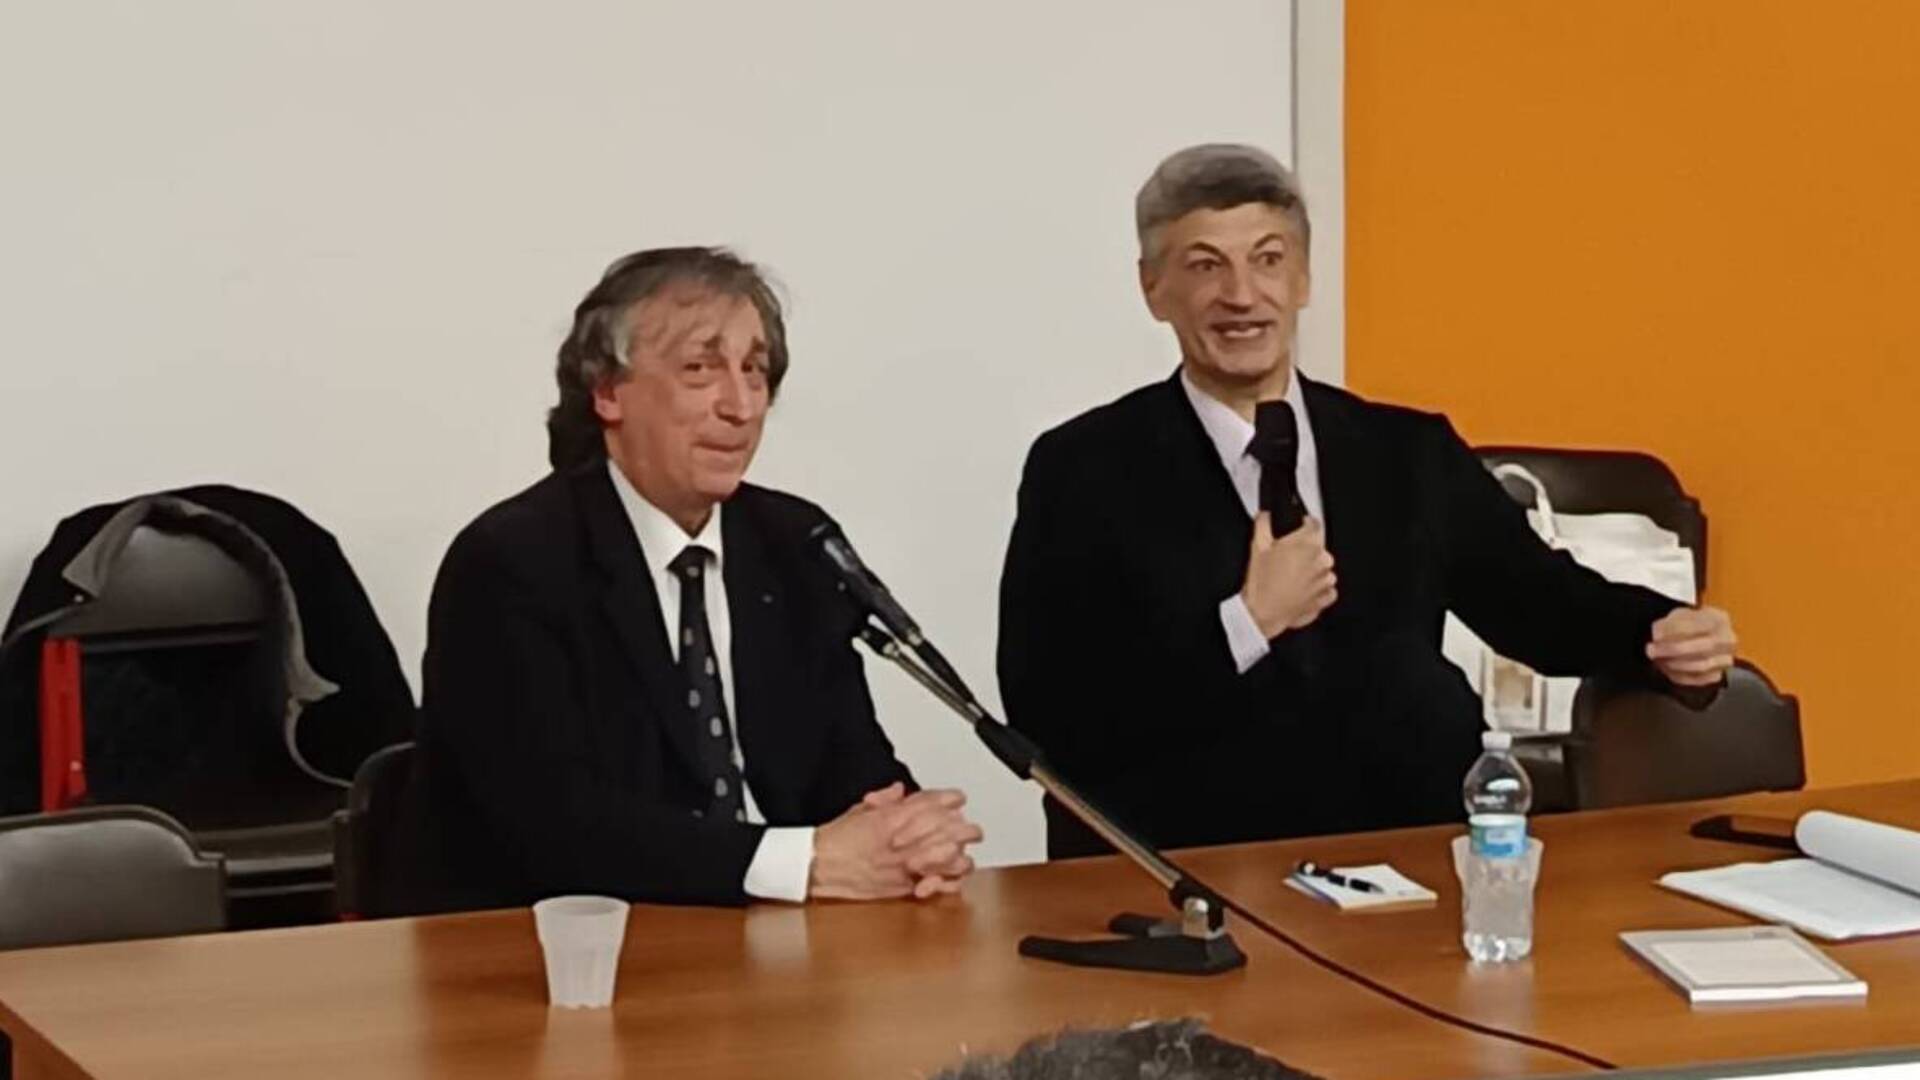 Saronno, Luciano Silighini discute del libro “Storia araldica di famiglia” con l’autore